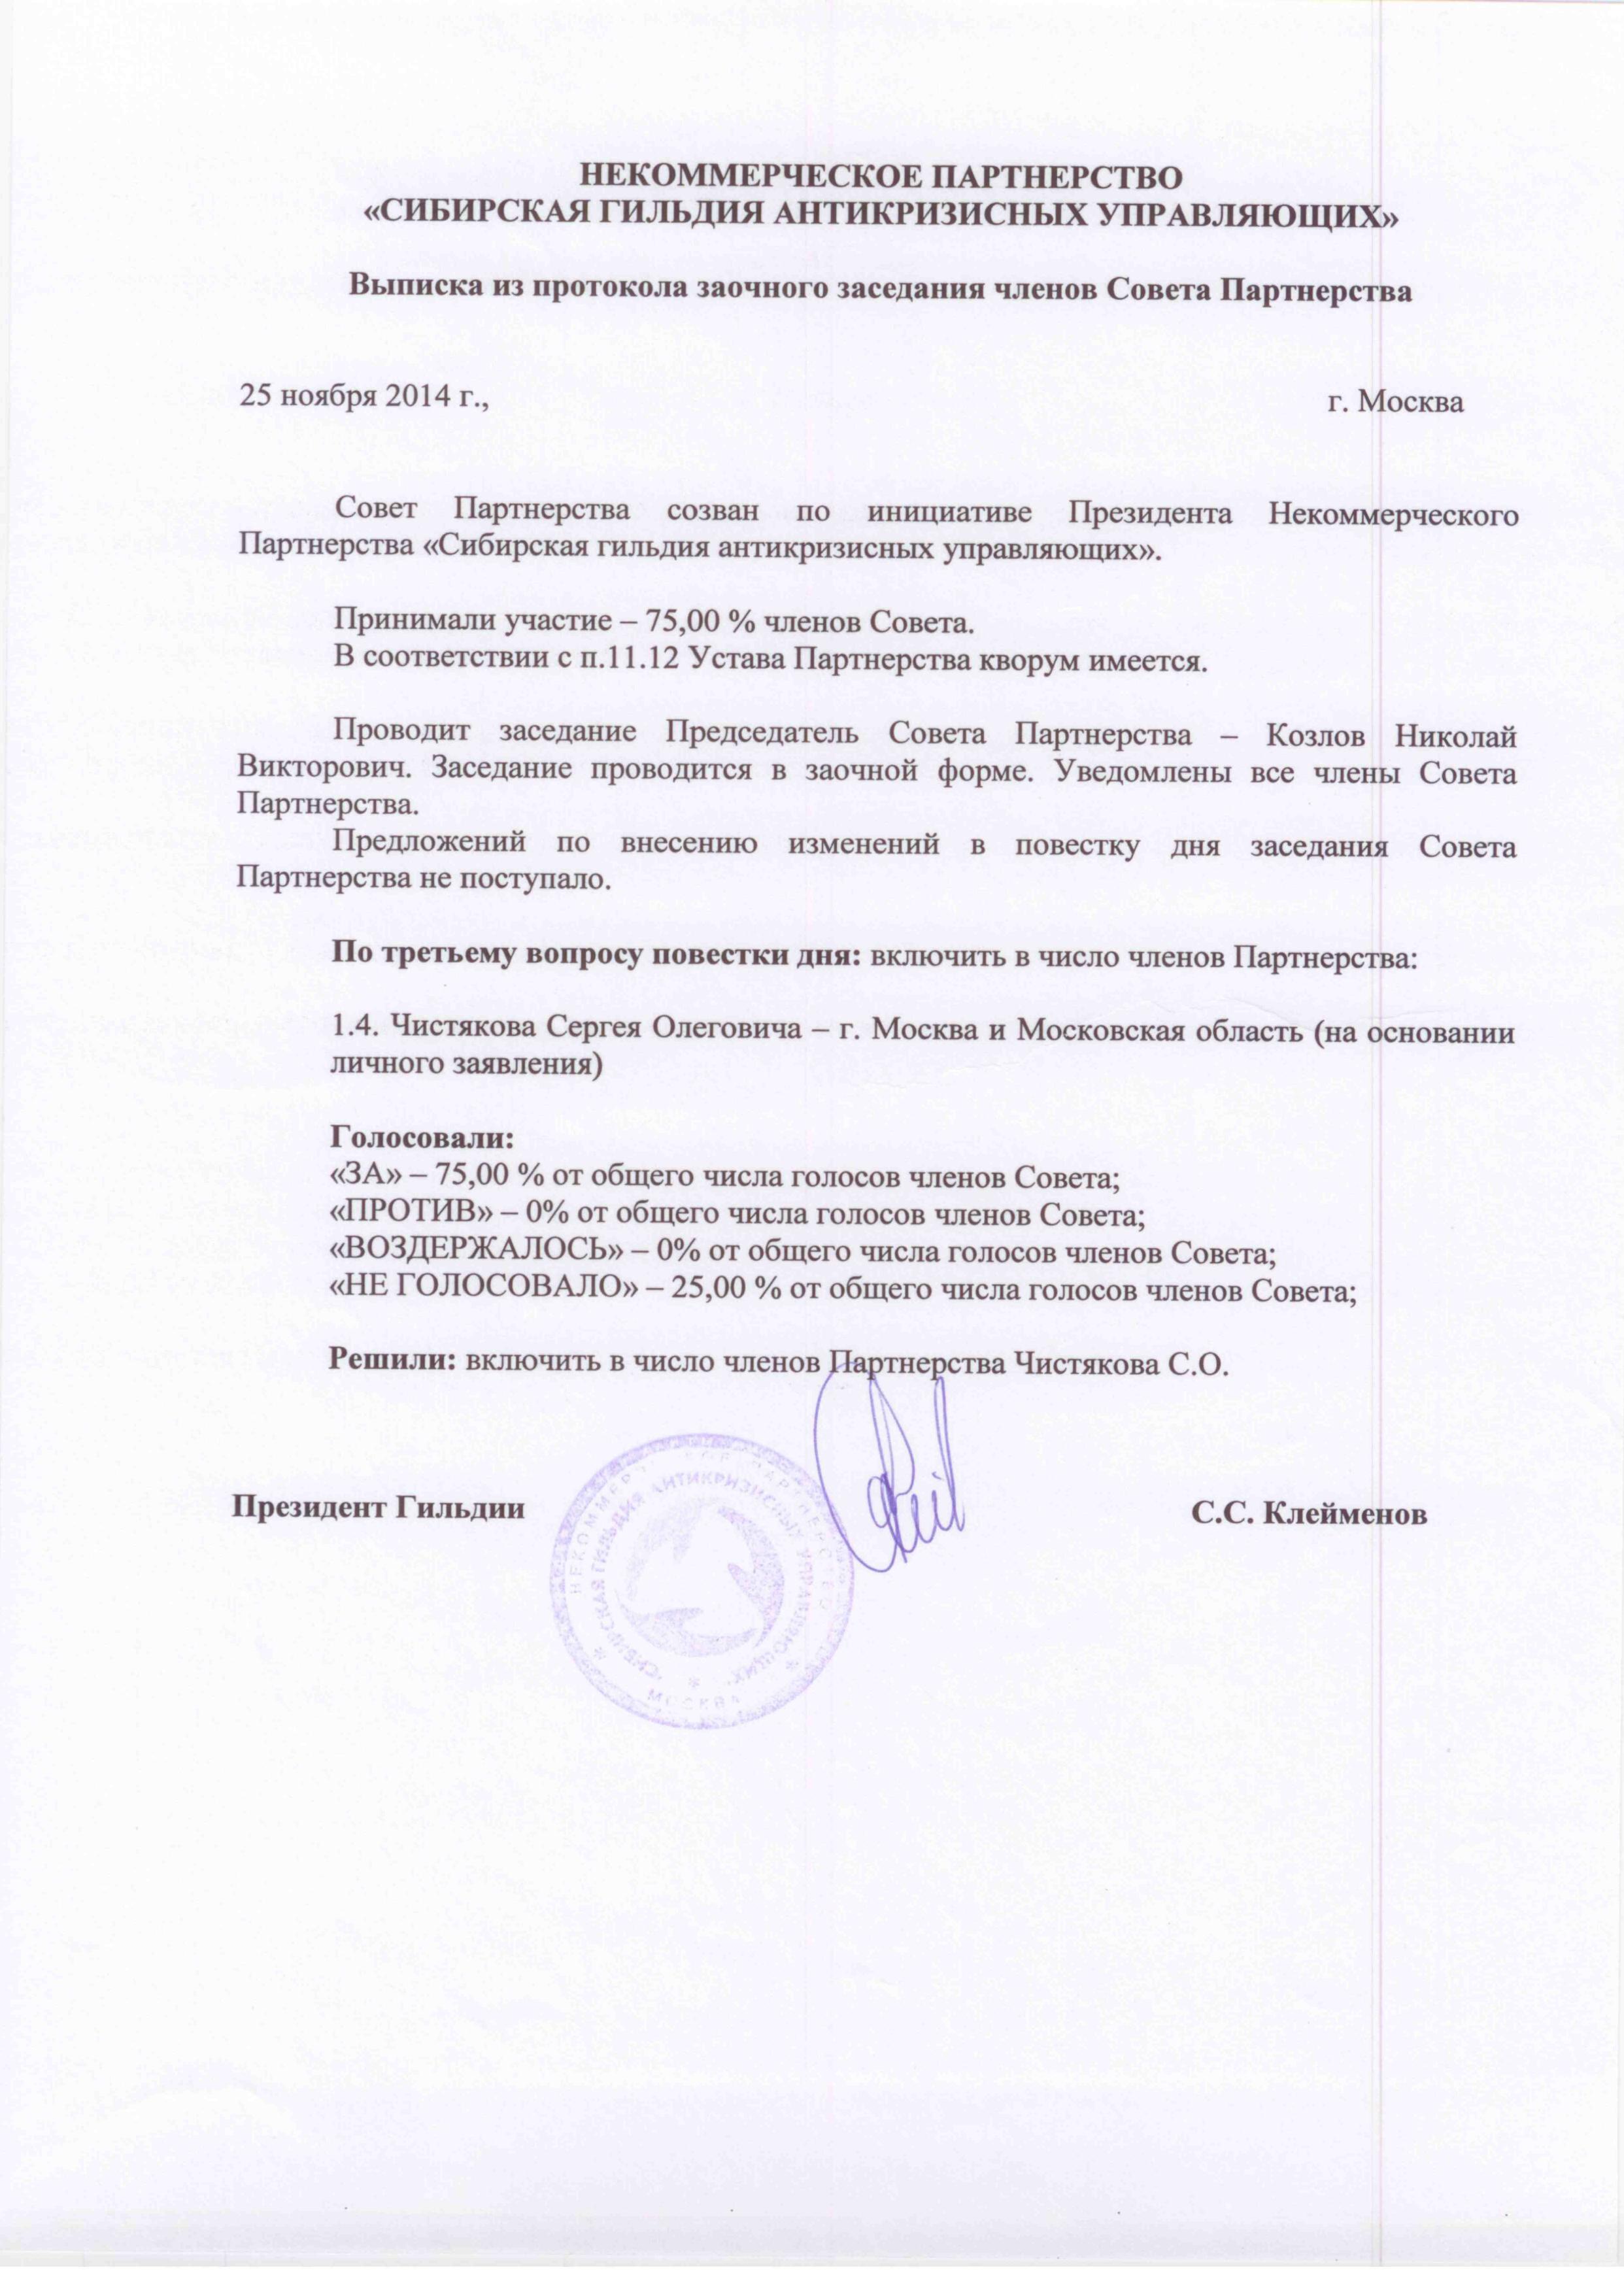 Протокол о приеме в члены НП "СГАУ"